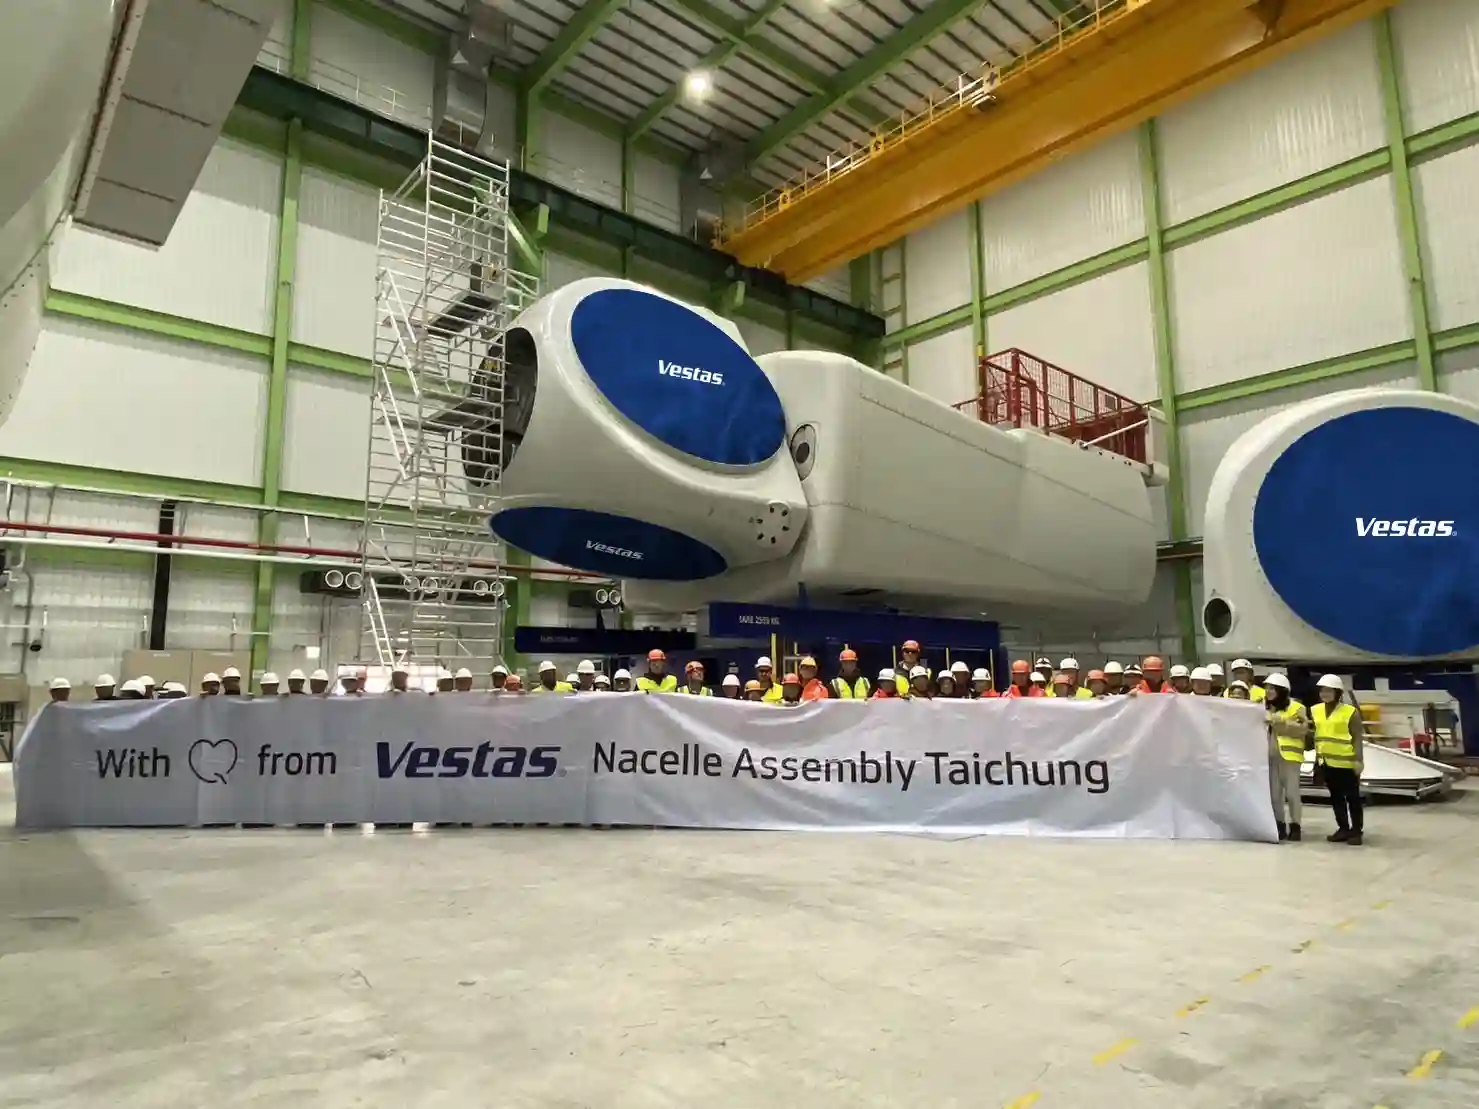 Vestas 於臺灣完成 V174 風機輪轂與機艙安裝及測試工程